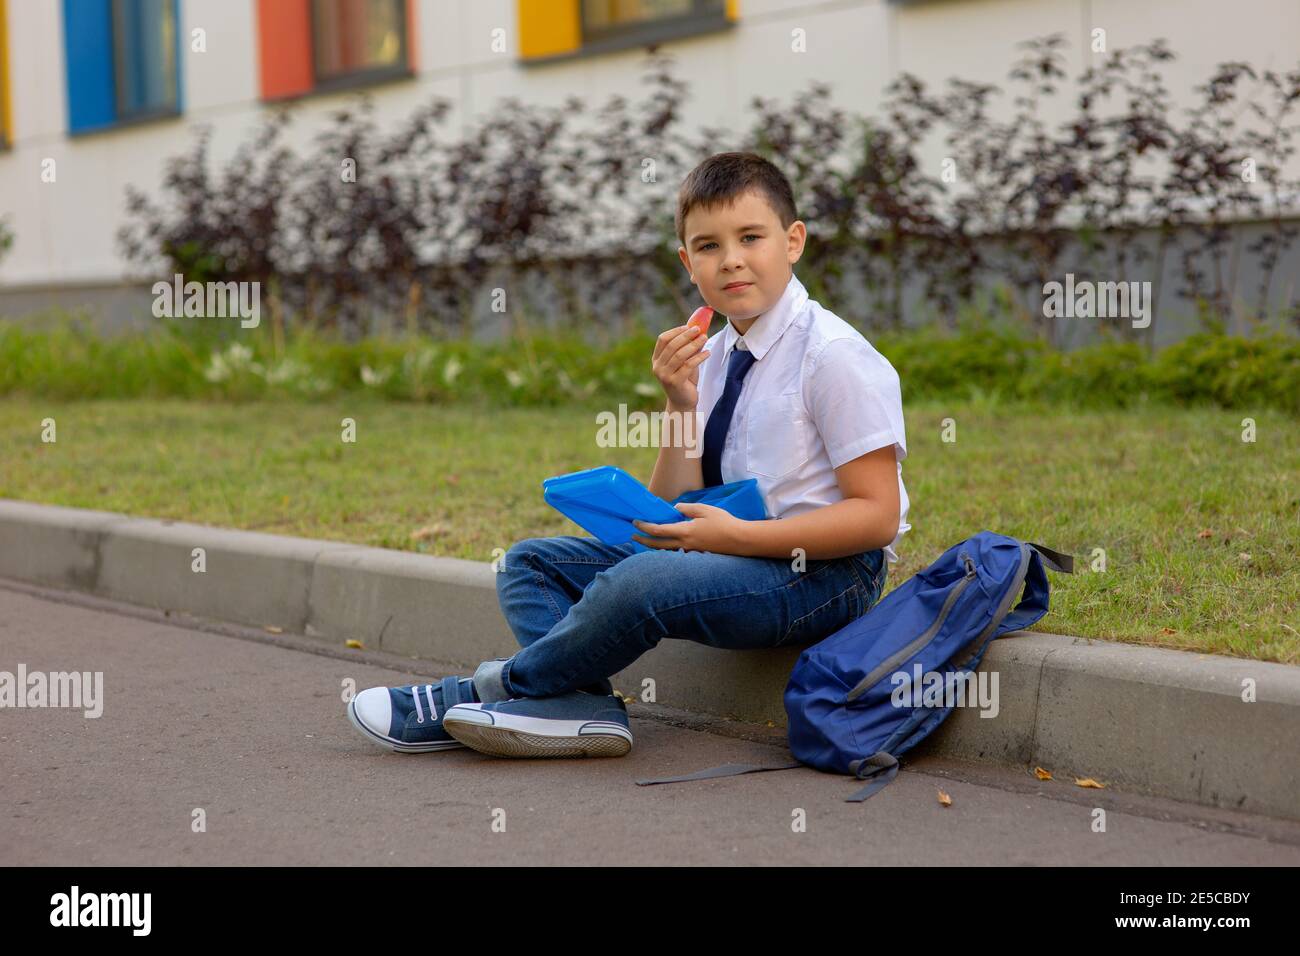 il ragazzo in una camicia bianca con una cravatta blu, tiene una scatola blu per il pranzo e una fetta di mela, guarda la macchina fotografica Foto Stock